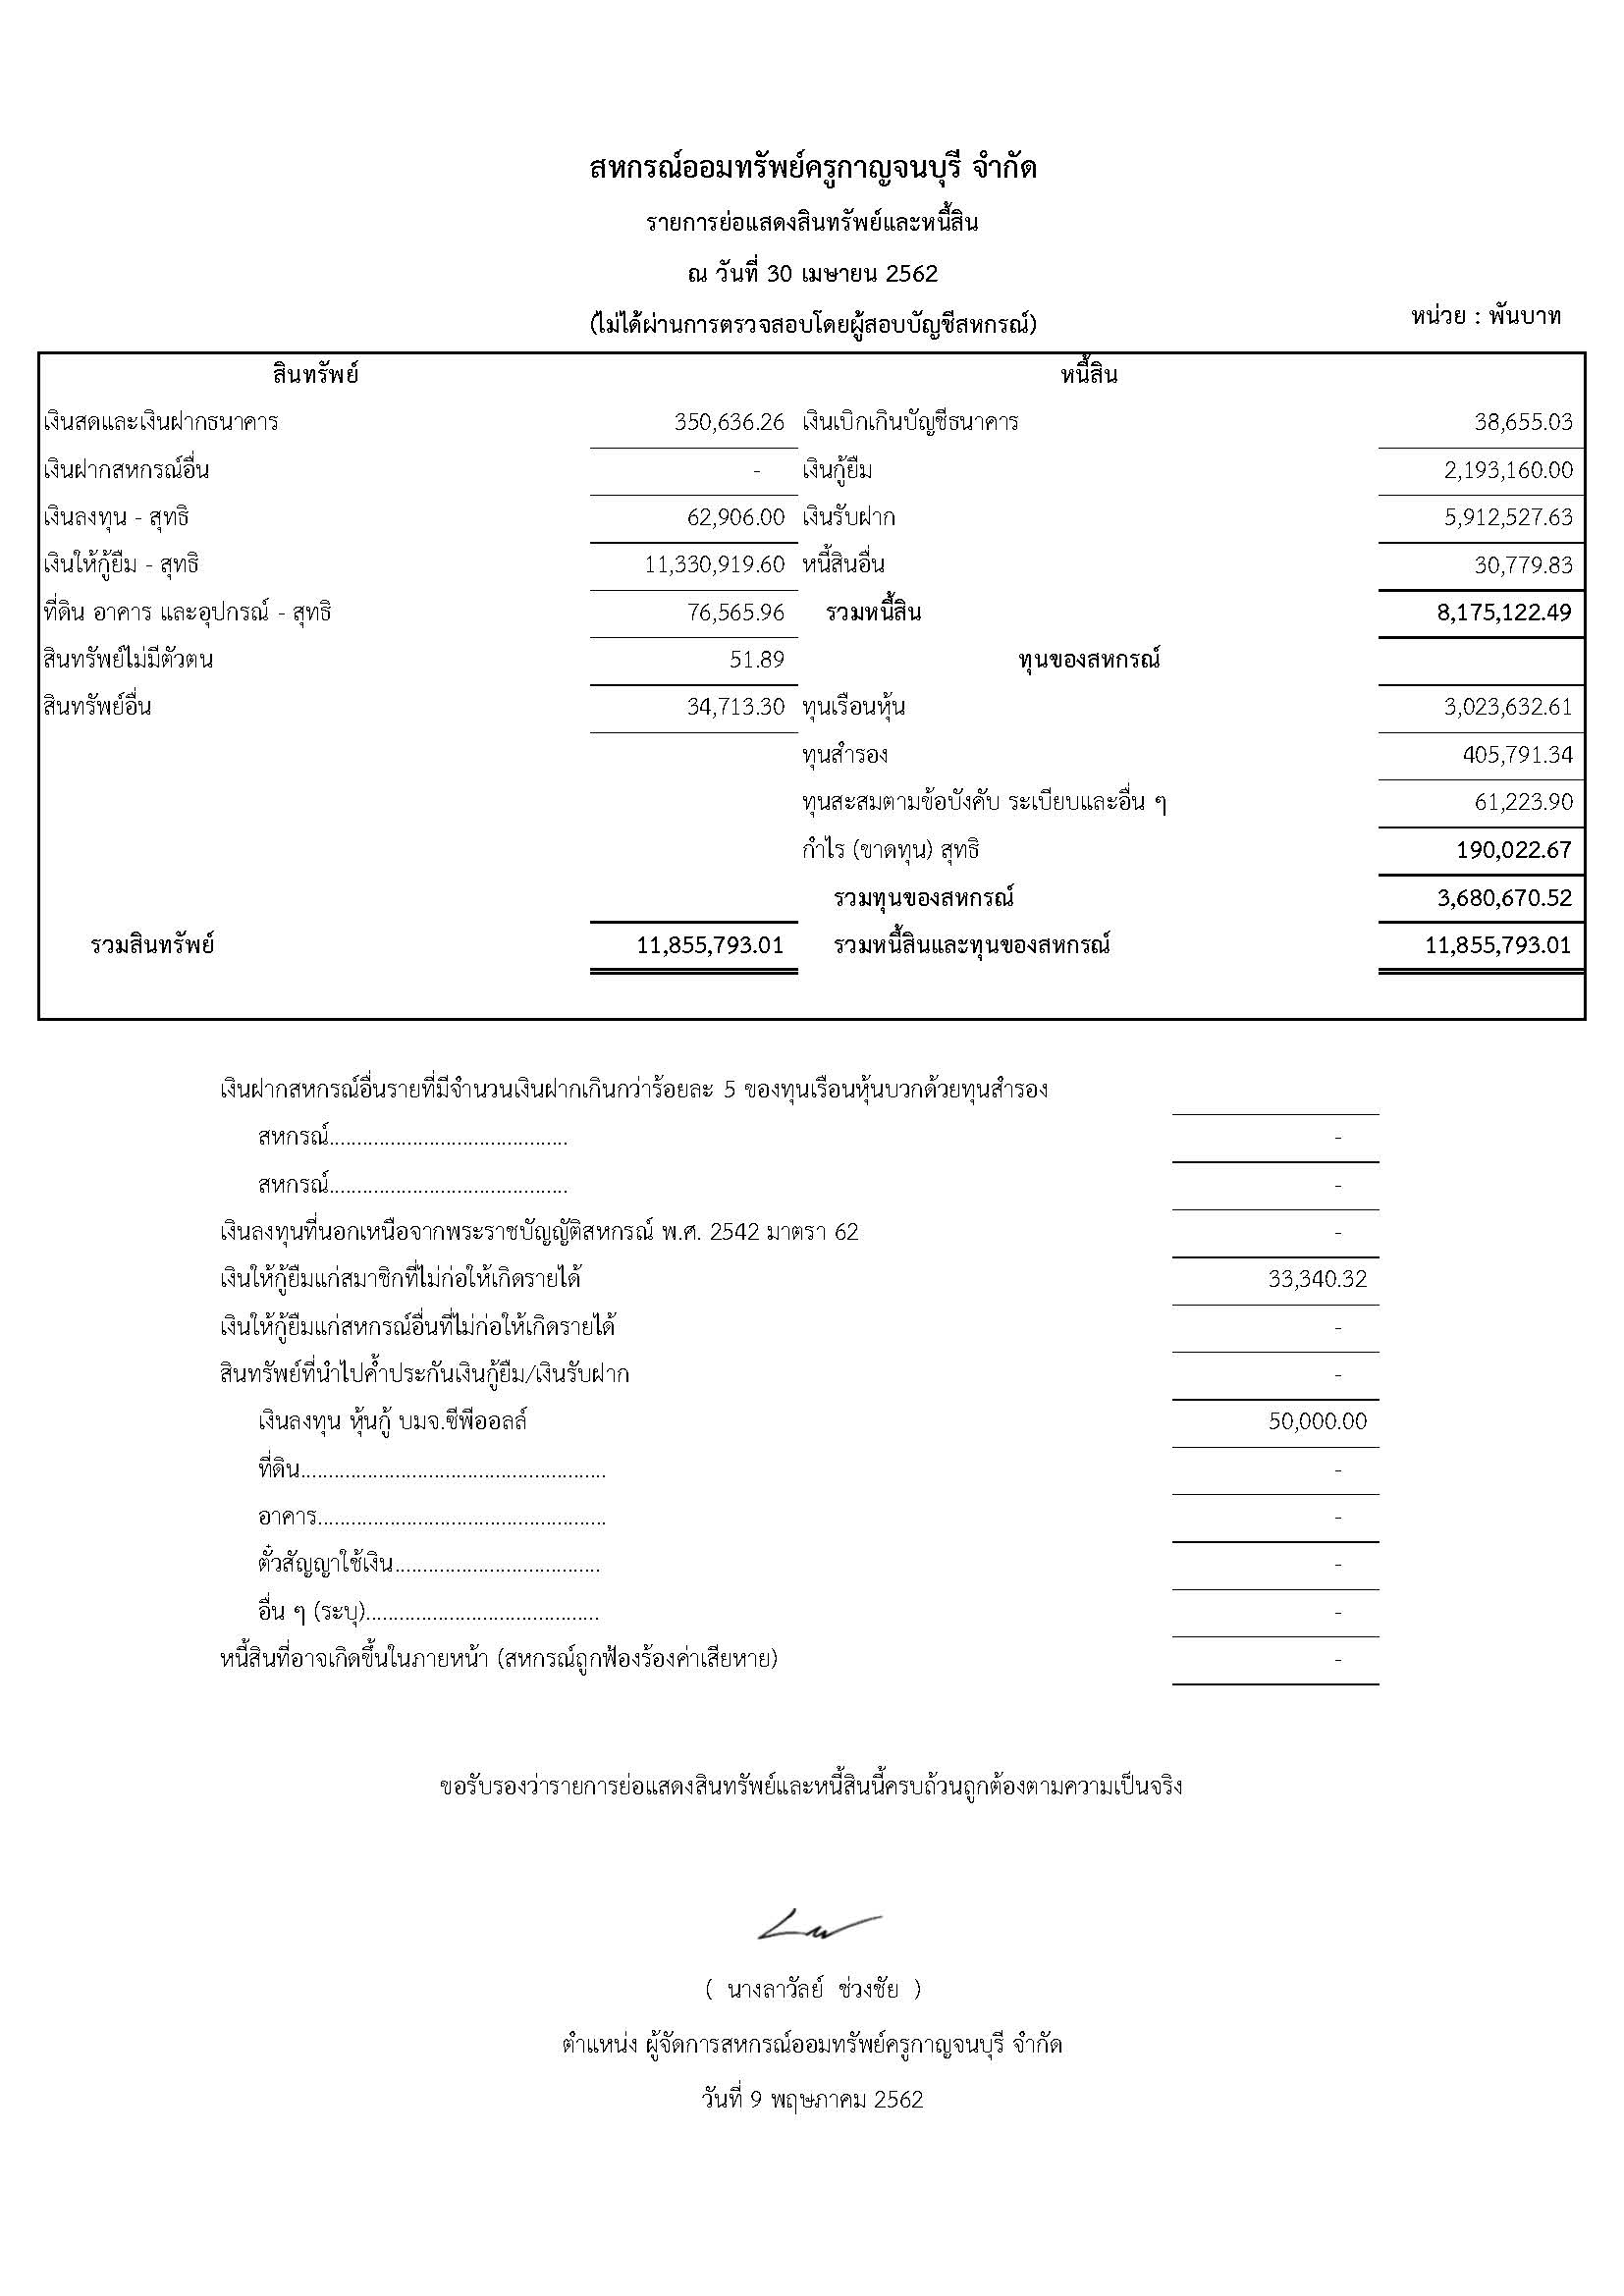 รายการย่อแสดงสินทรัพย์และหนี้สิน ณ วันที่ 30 เมษายน 2562 (ไม่ได้ผ่านการตรวจสอบโดยผู้สอบบัญชีสหกรณ์)